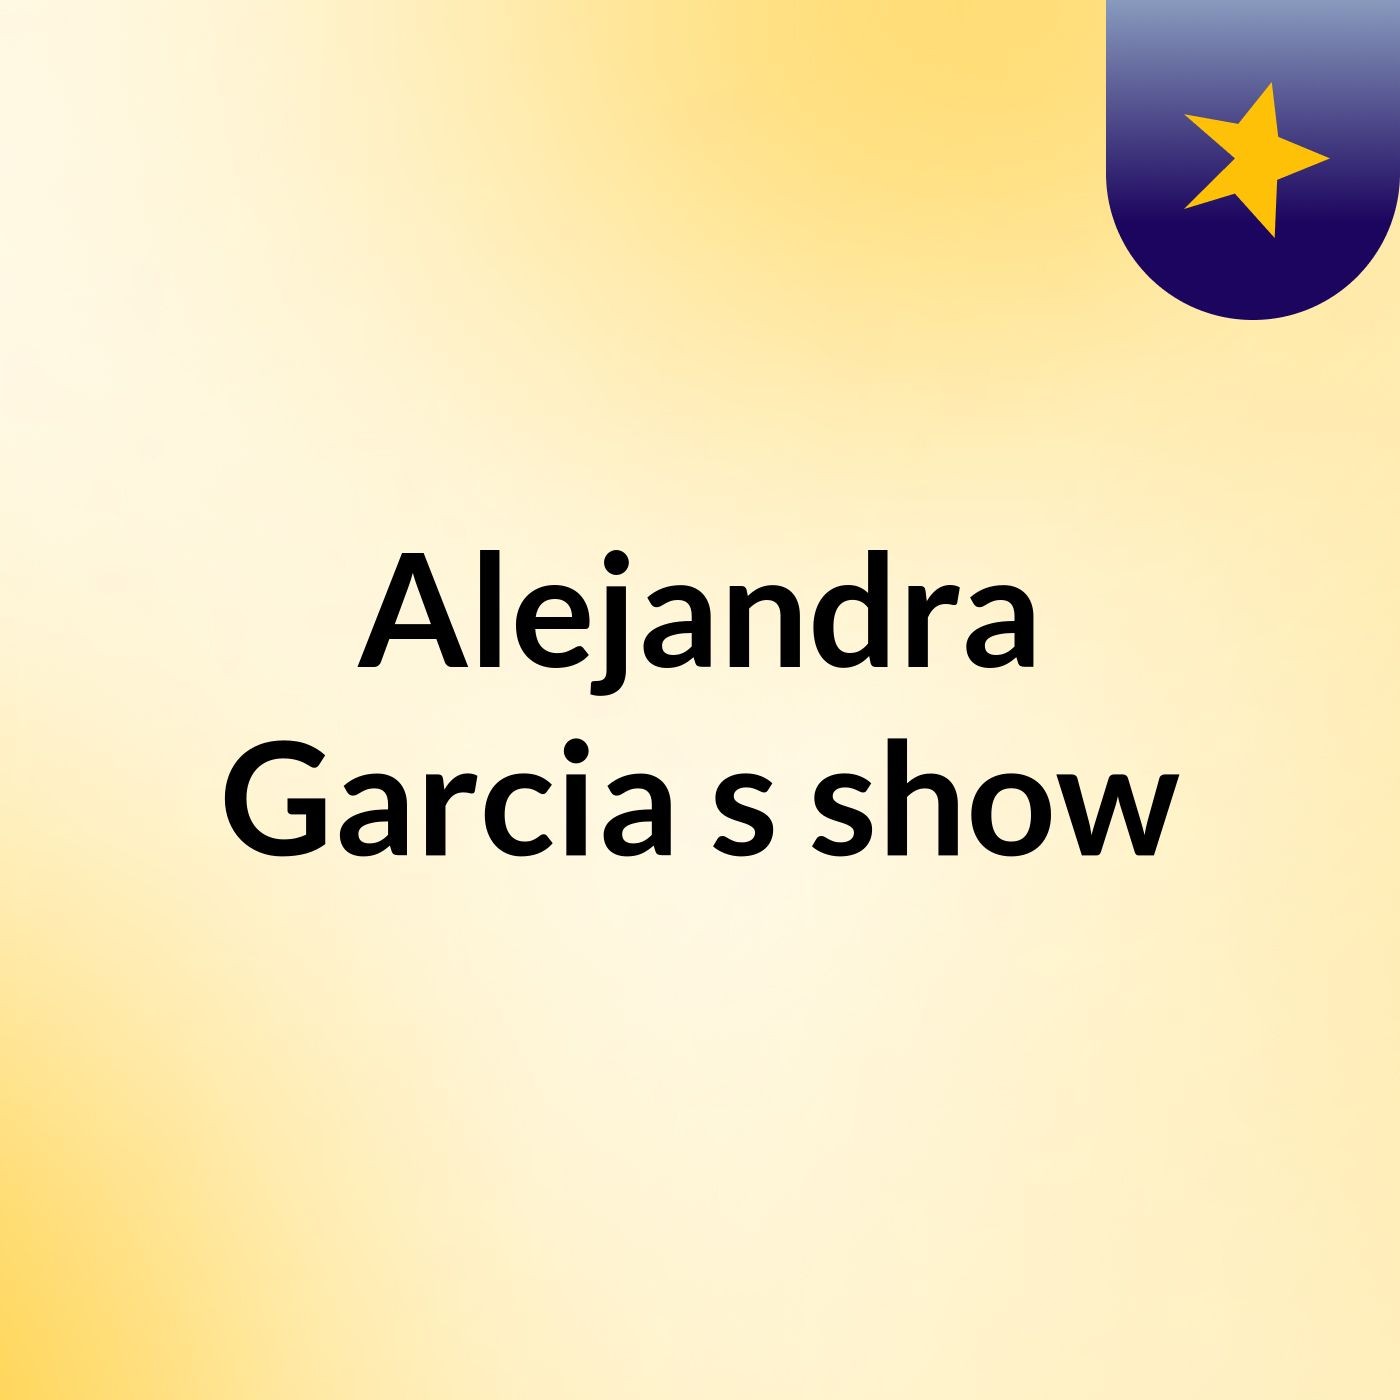 Alejandra Garcia's show